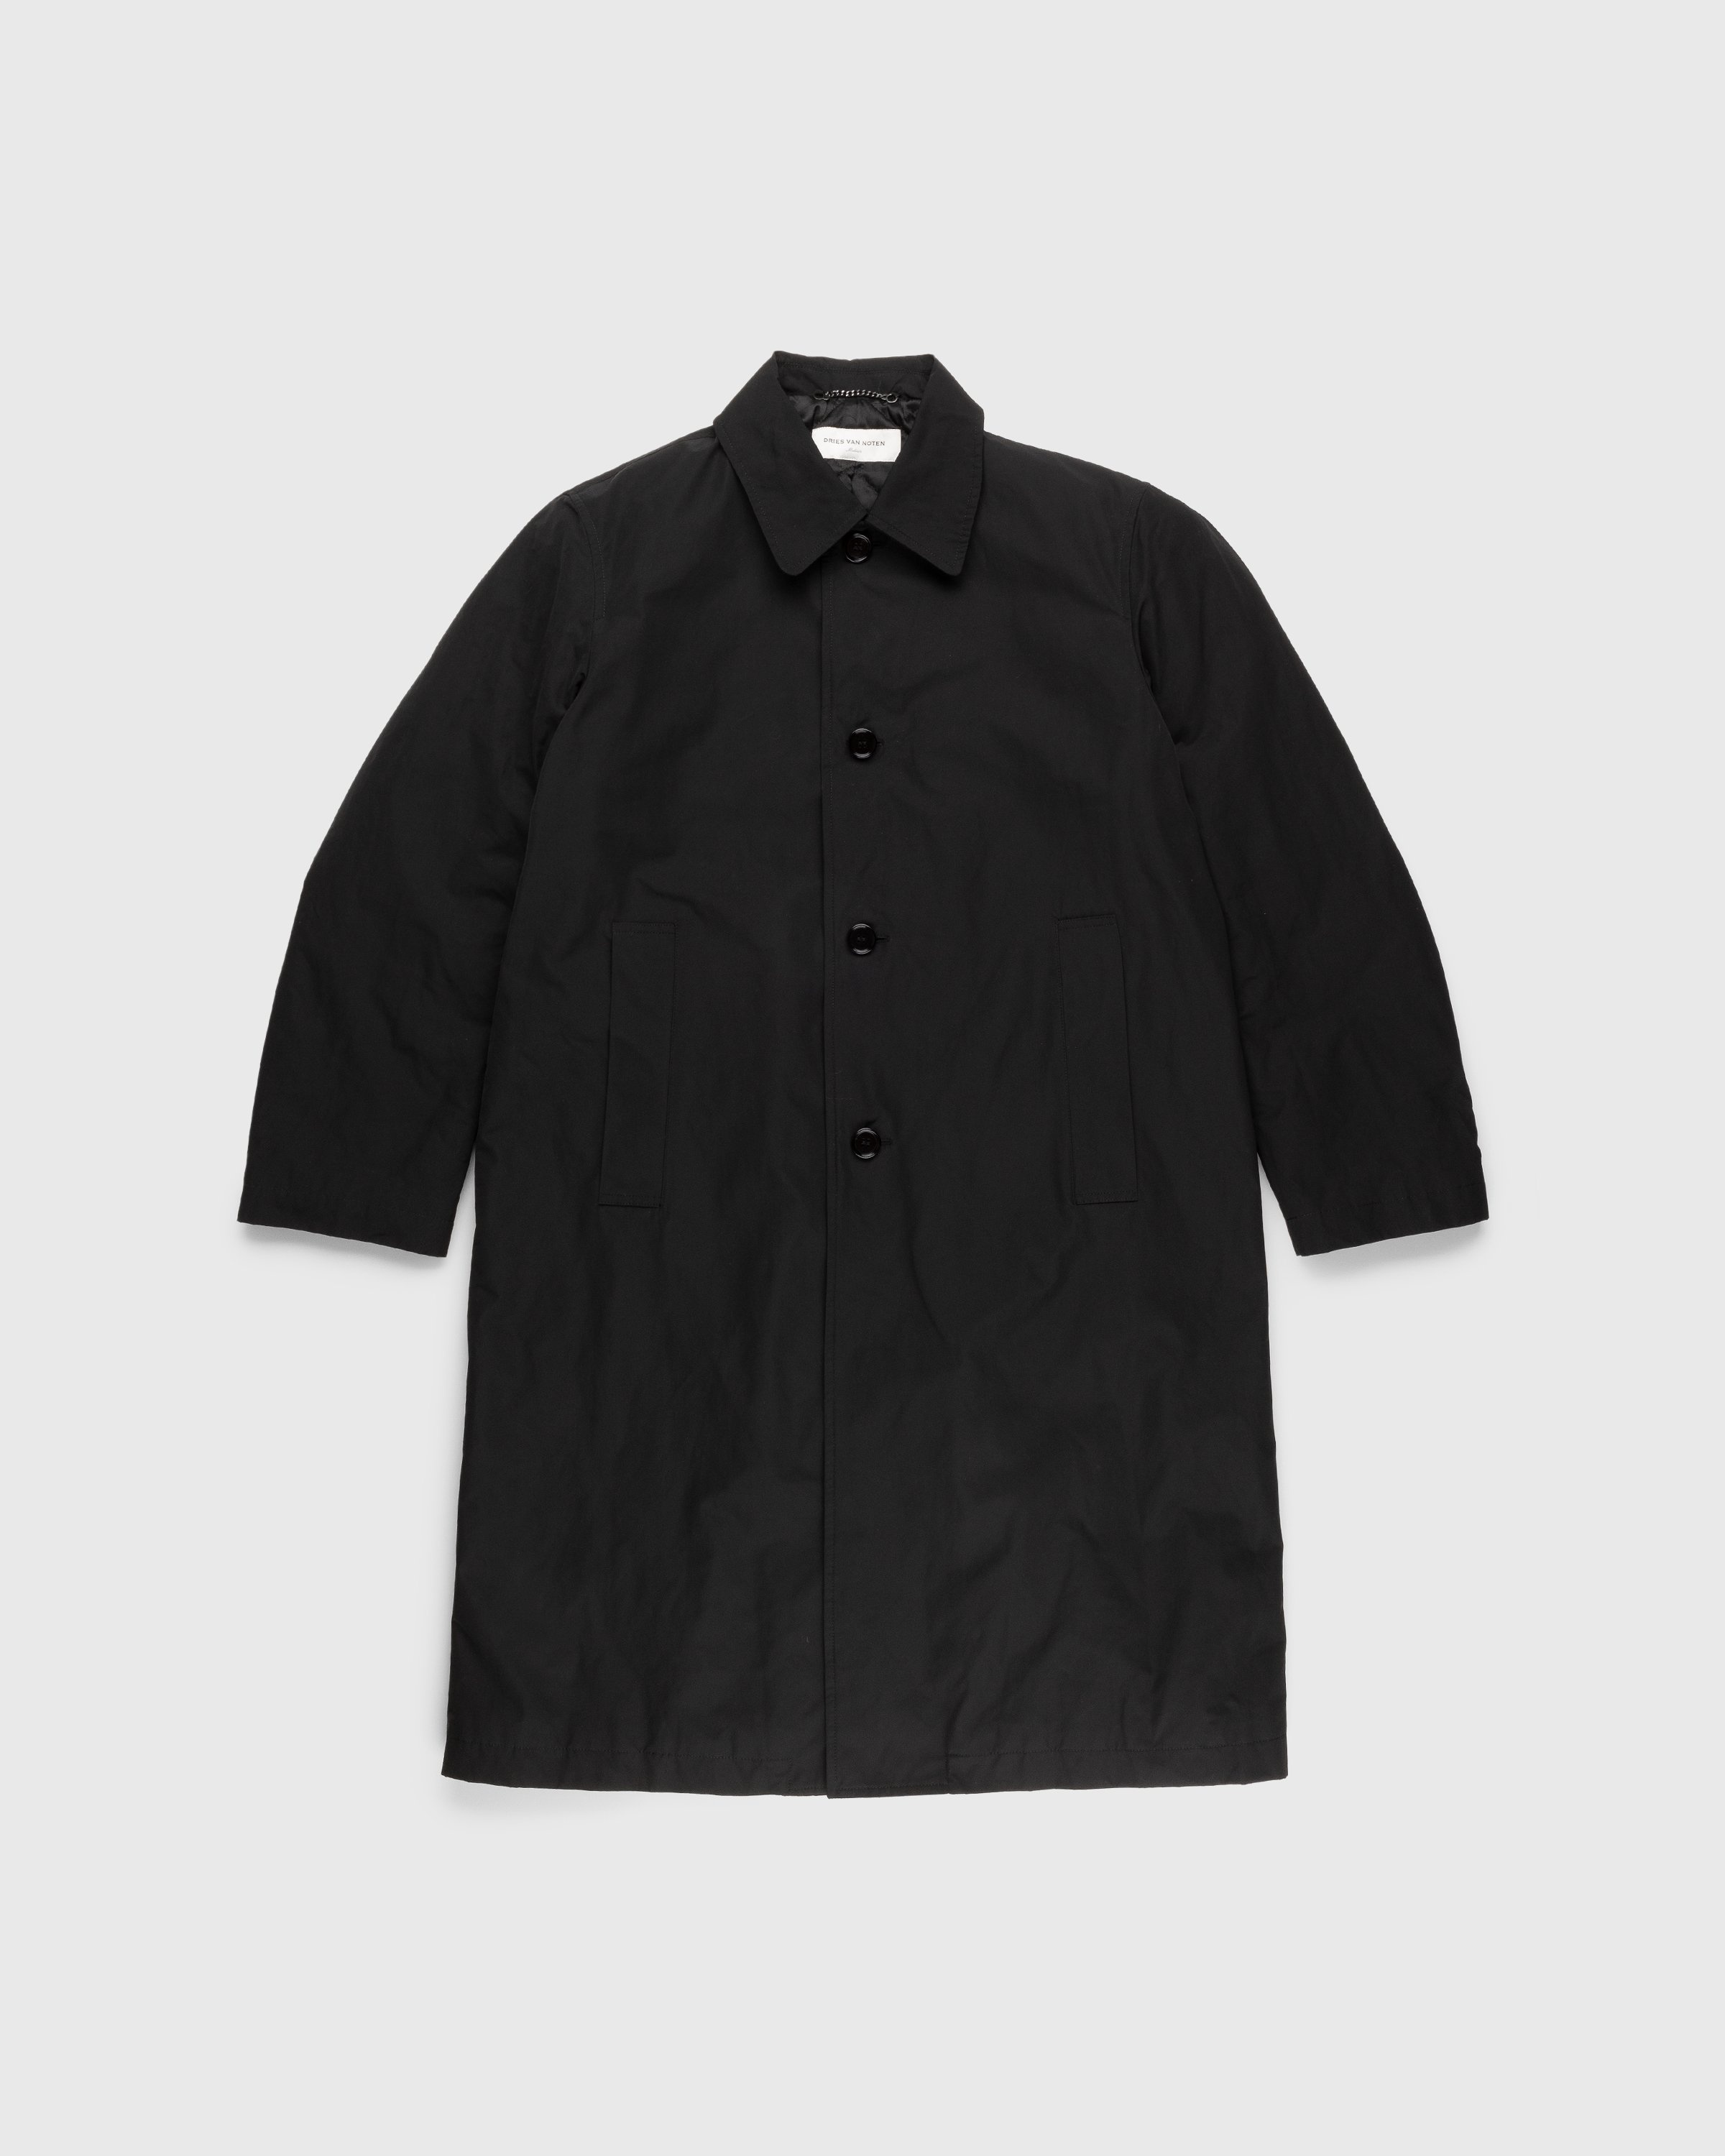 Dries van Noten – Rankle Coat Black | Highsnobiety Shop